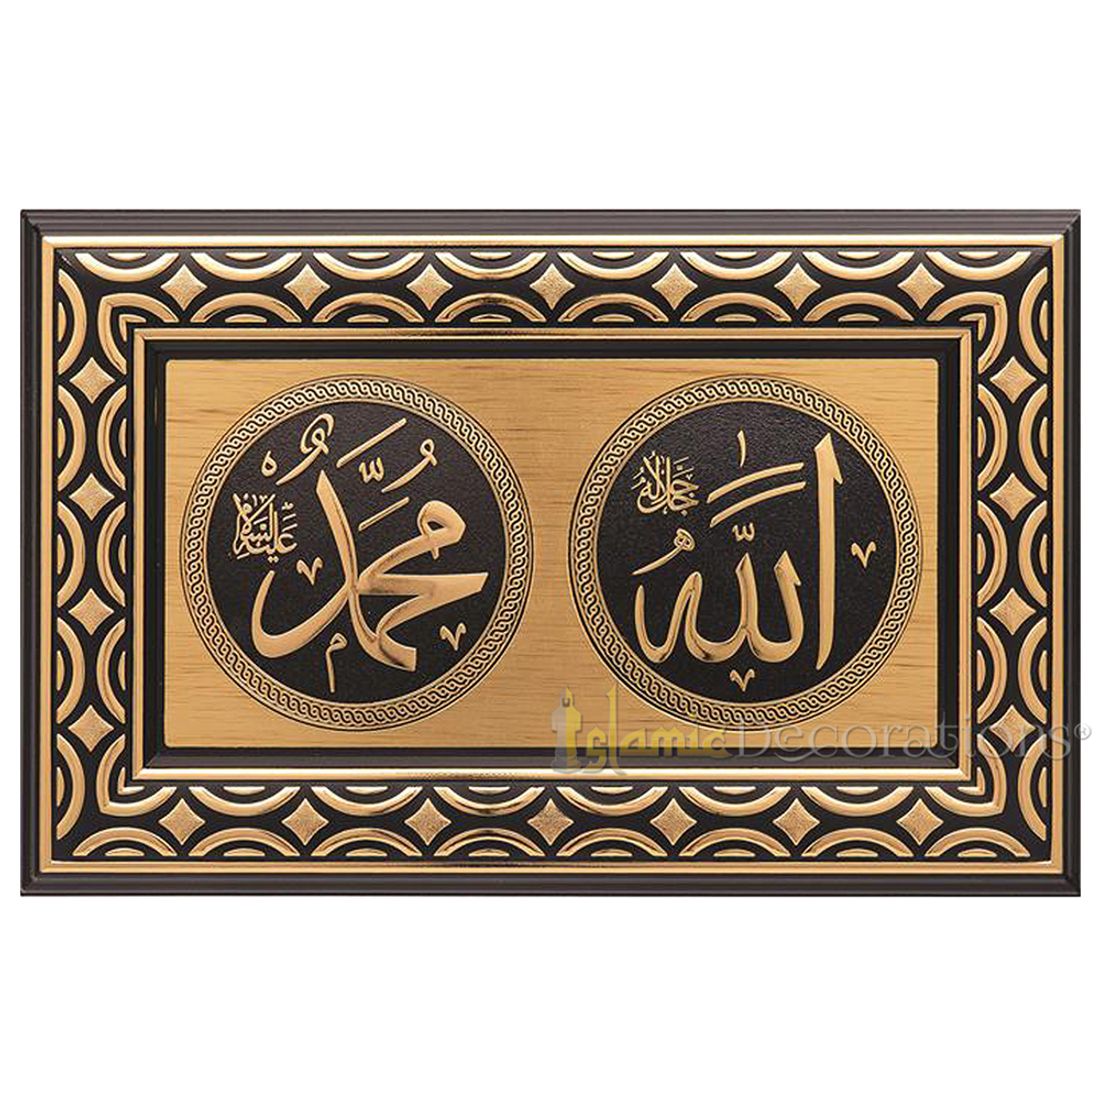 Cetakan Persegi Panjang Emas &amp; Hitam 8-5/8 x 13-3/8 pada Plakat Pajangan Allah Muhammad – Seni Kaligrafi Islam